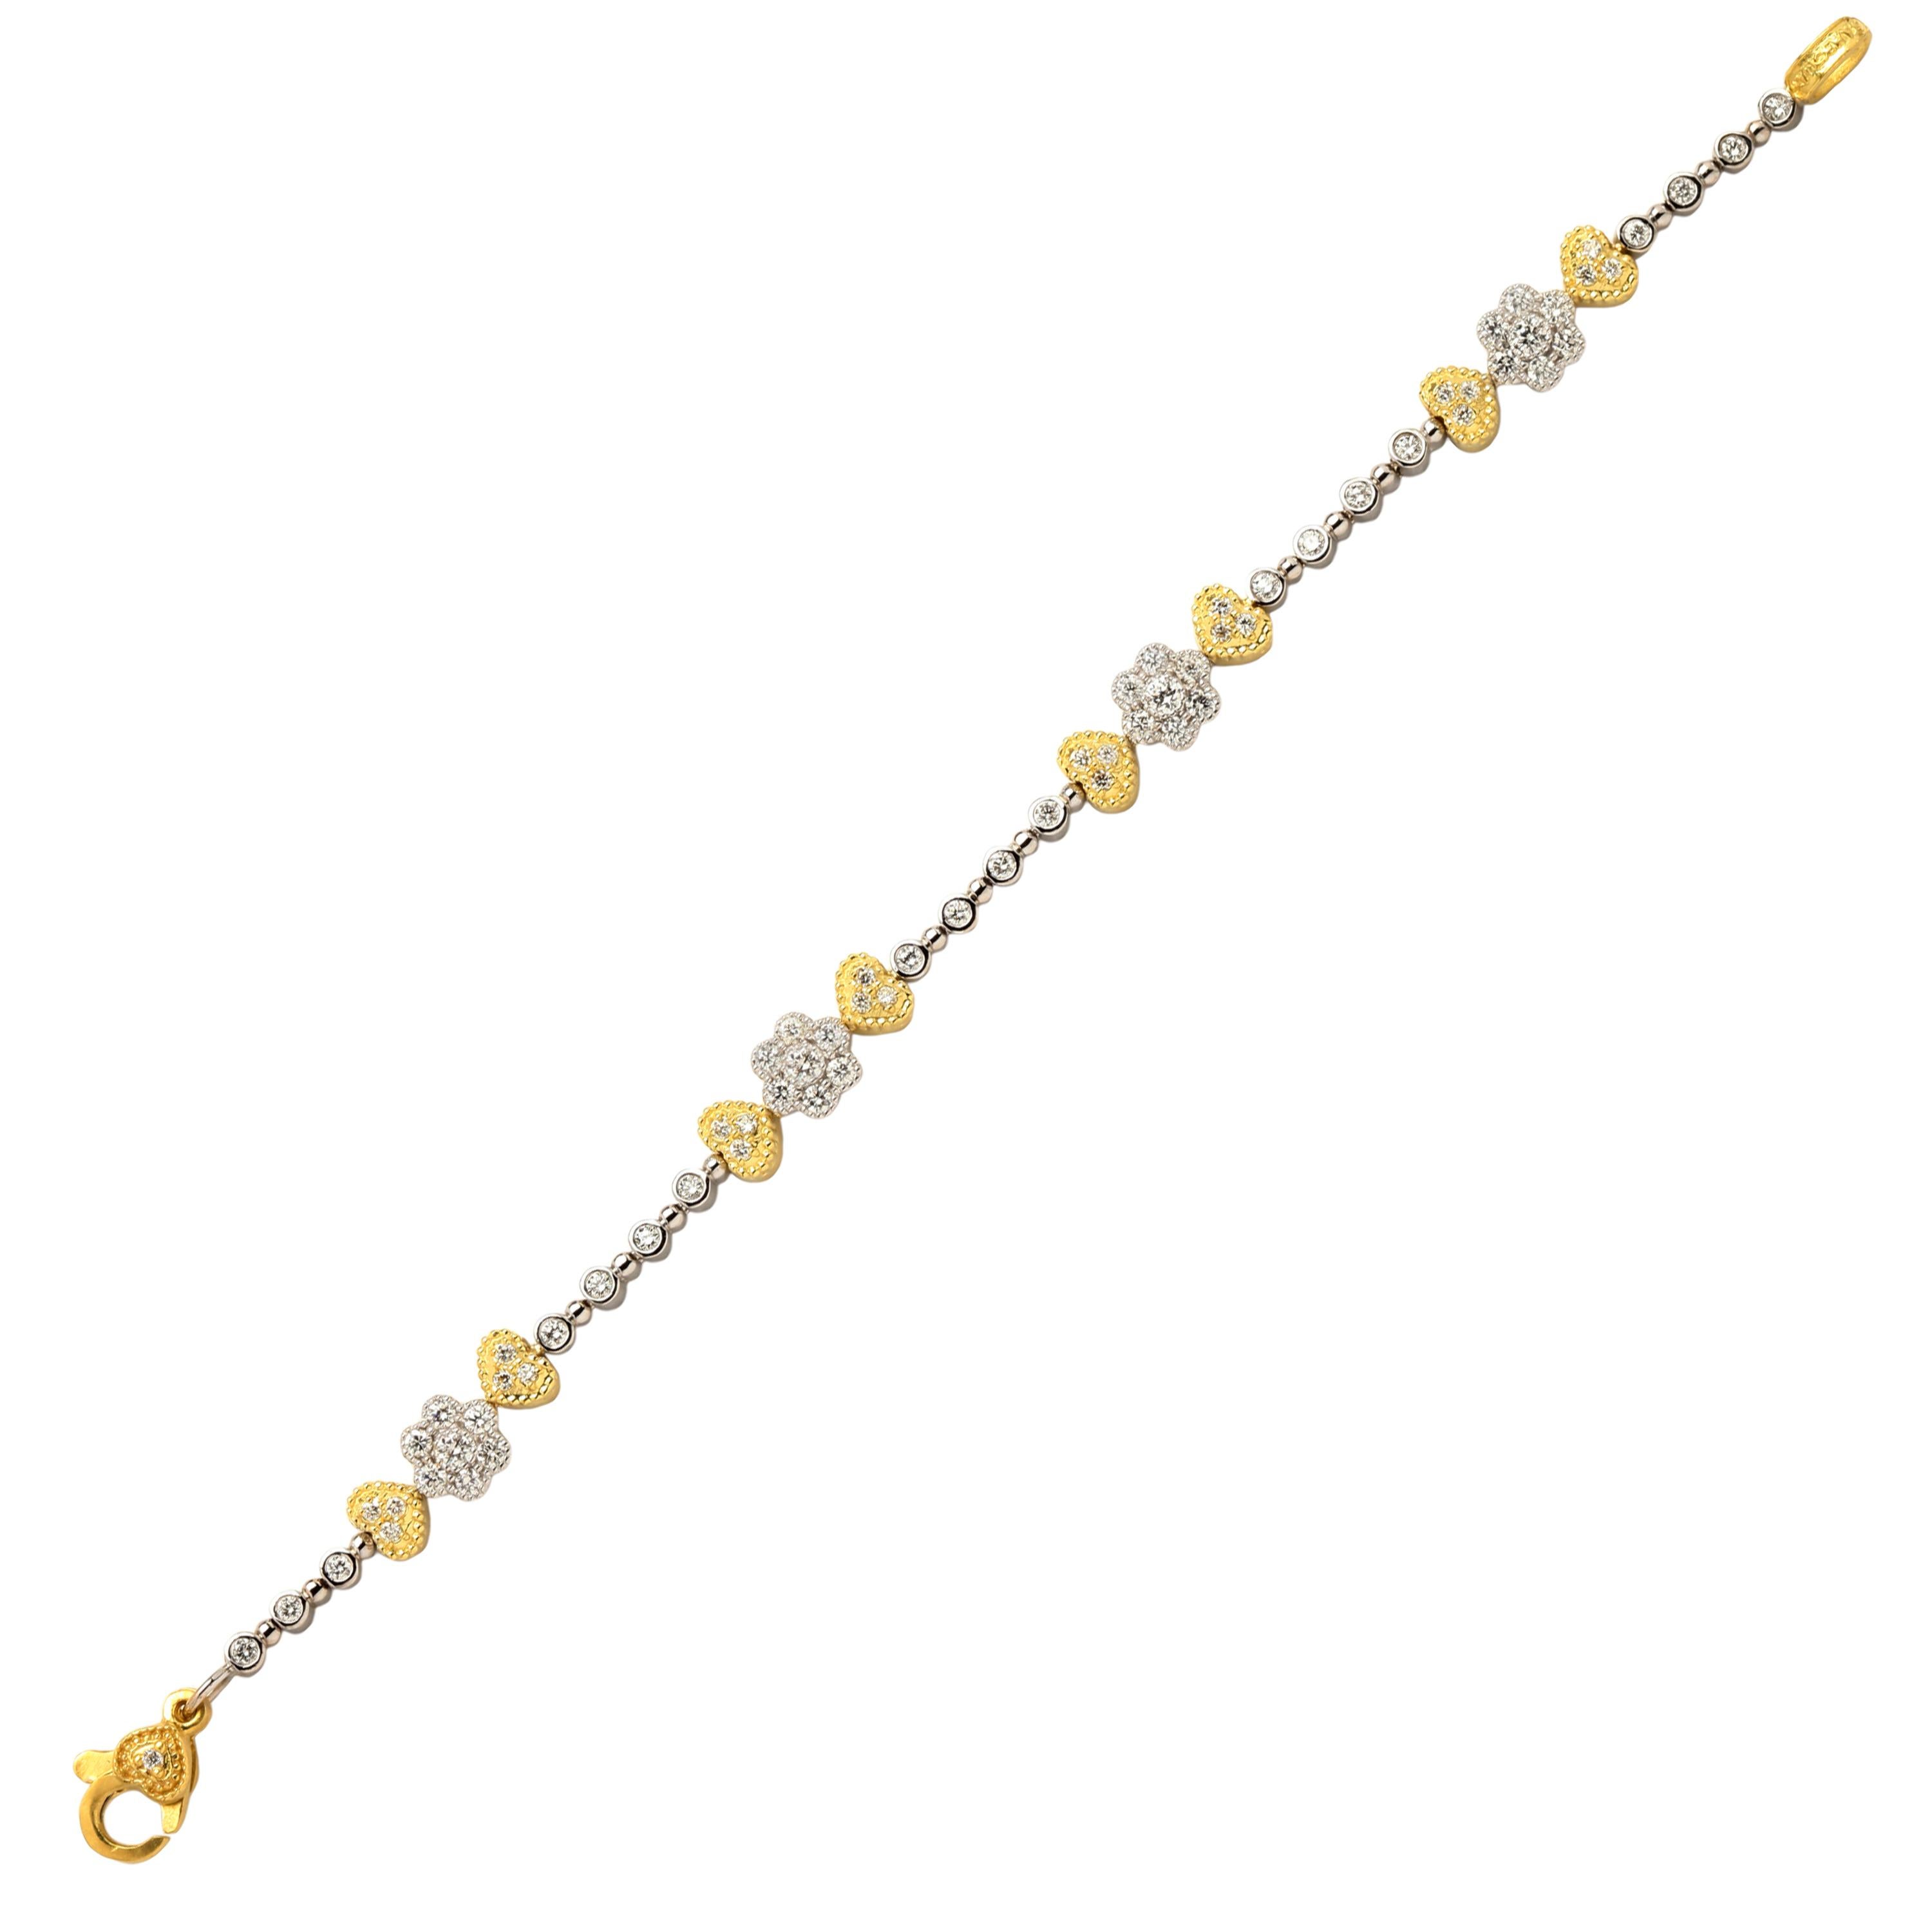 Round Cut Stambolian 18K Two Tone Yellow White Gold Diamond Tennis Bracelet For Sale